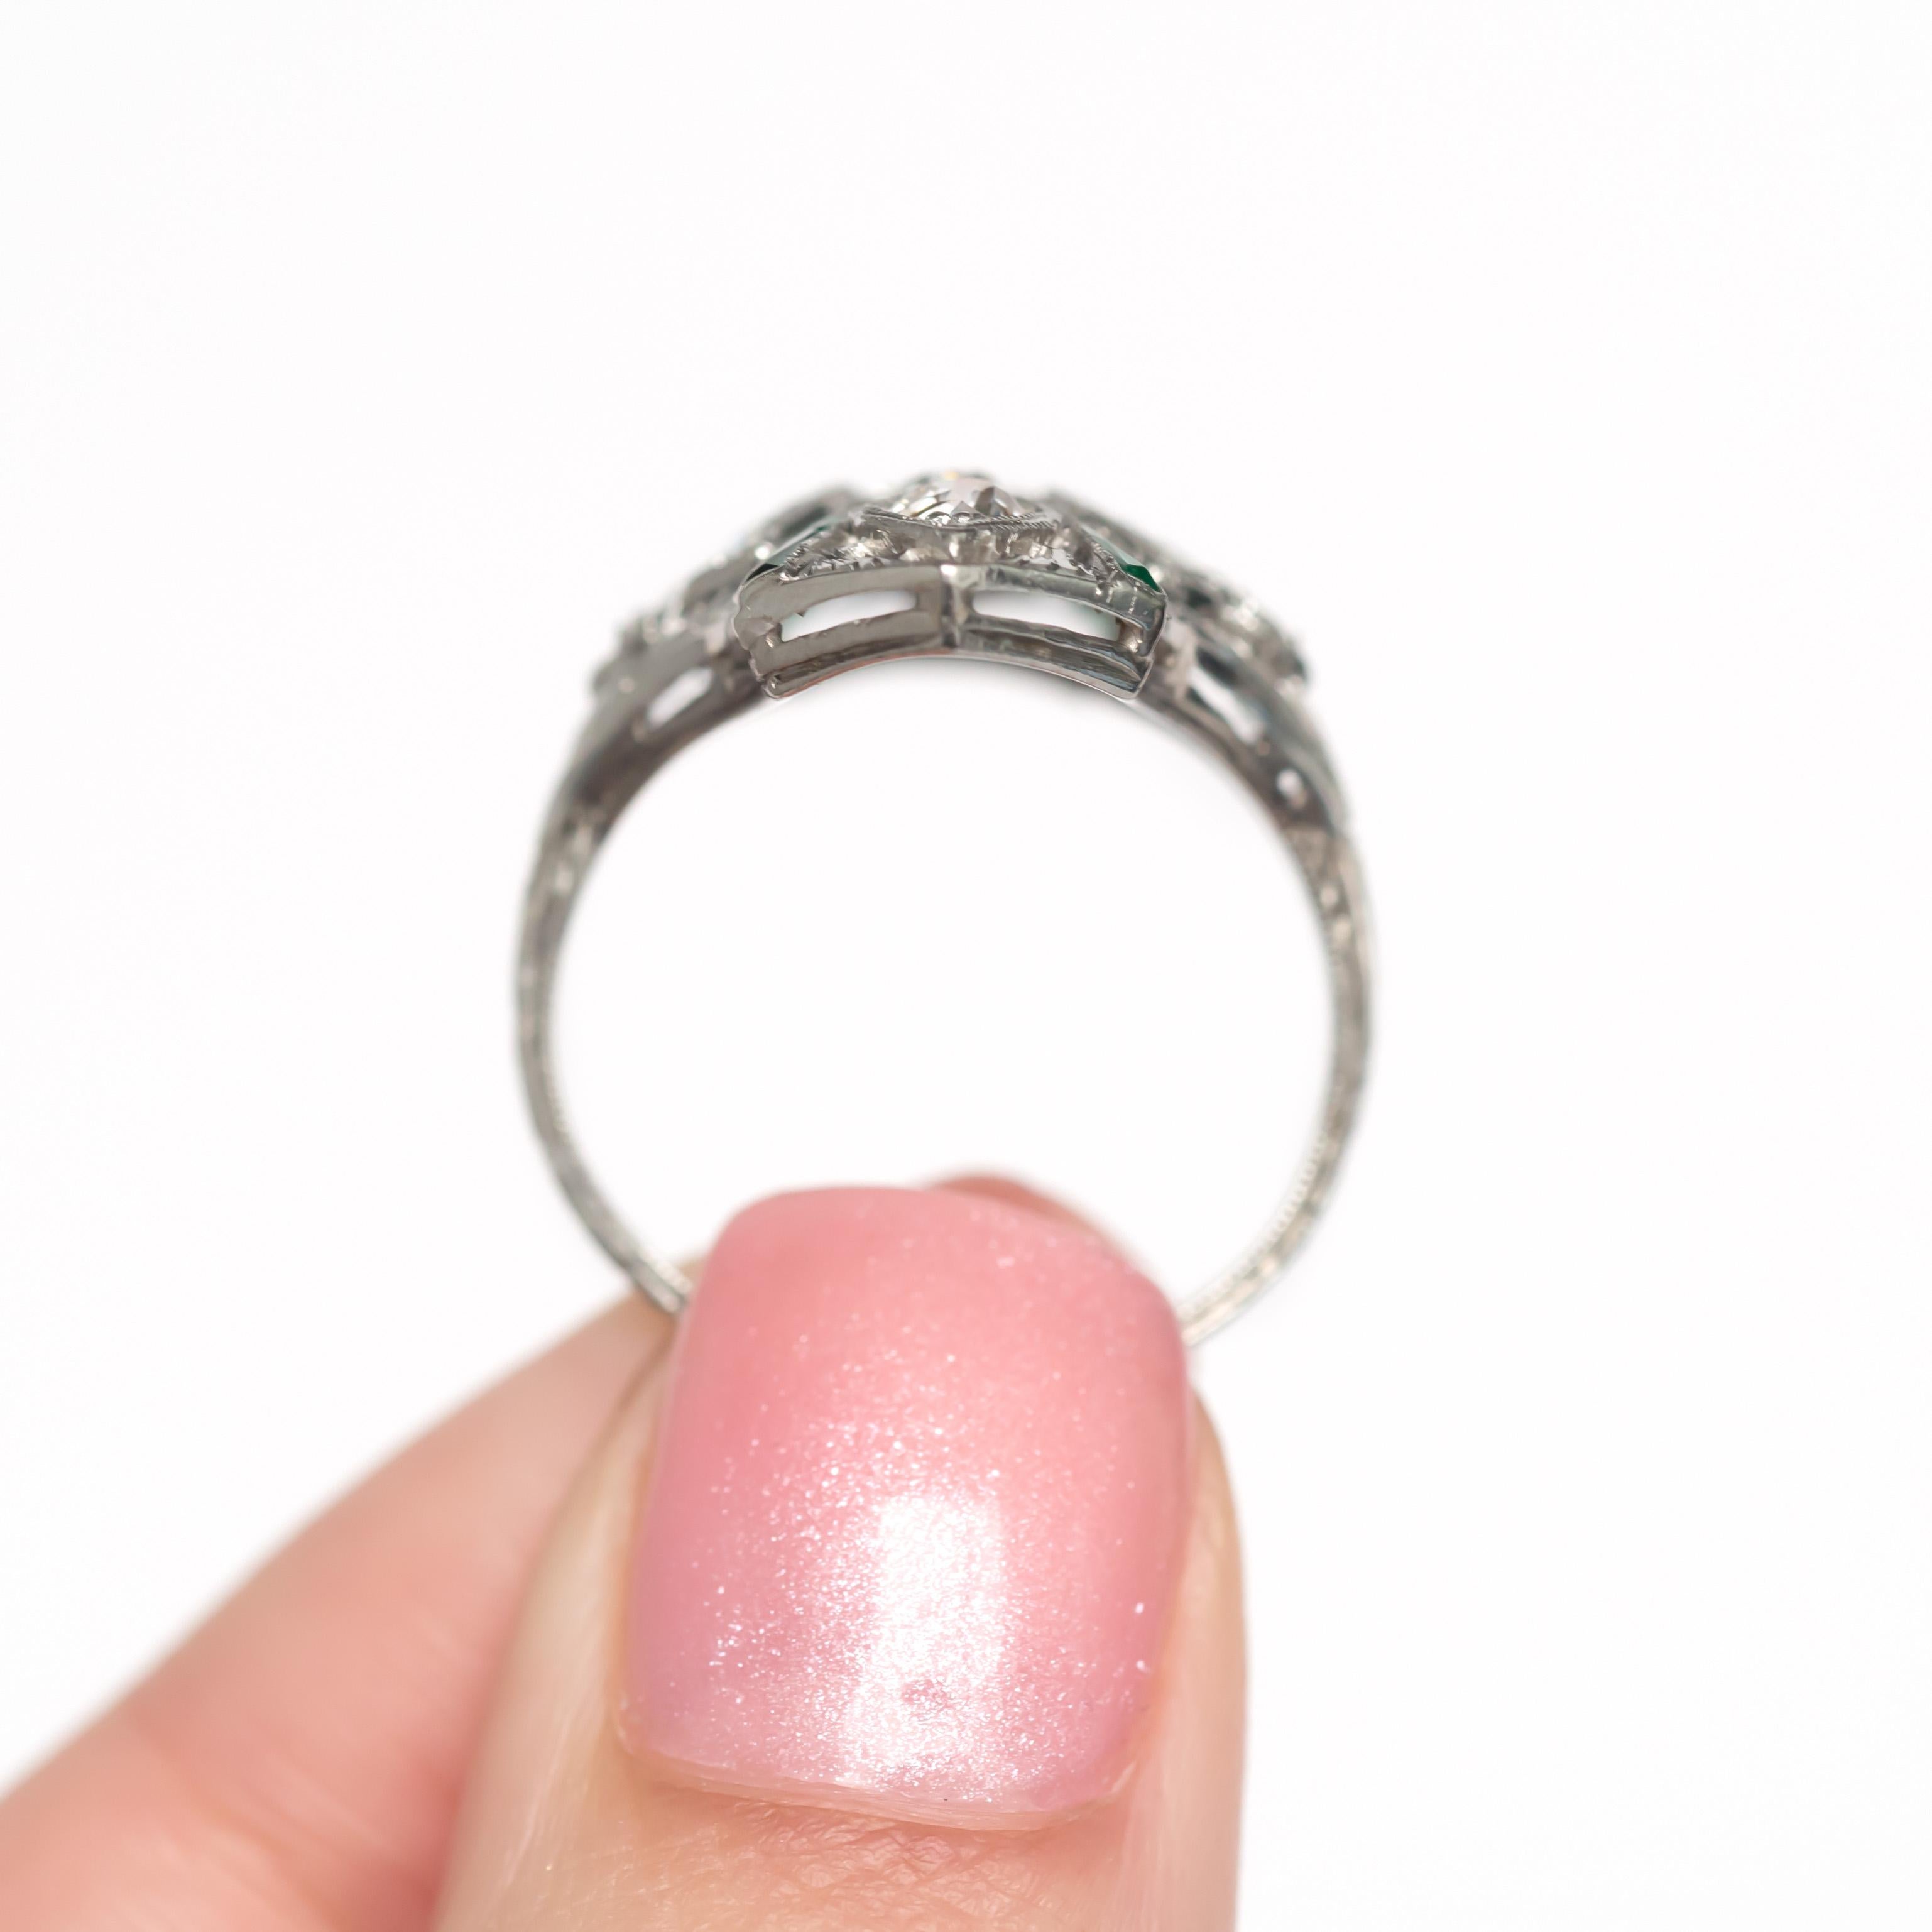 50 carat ring